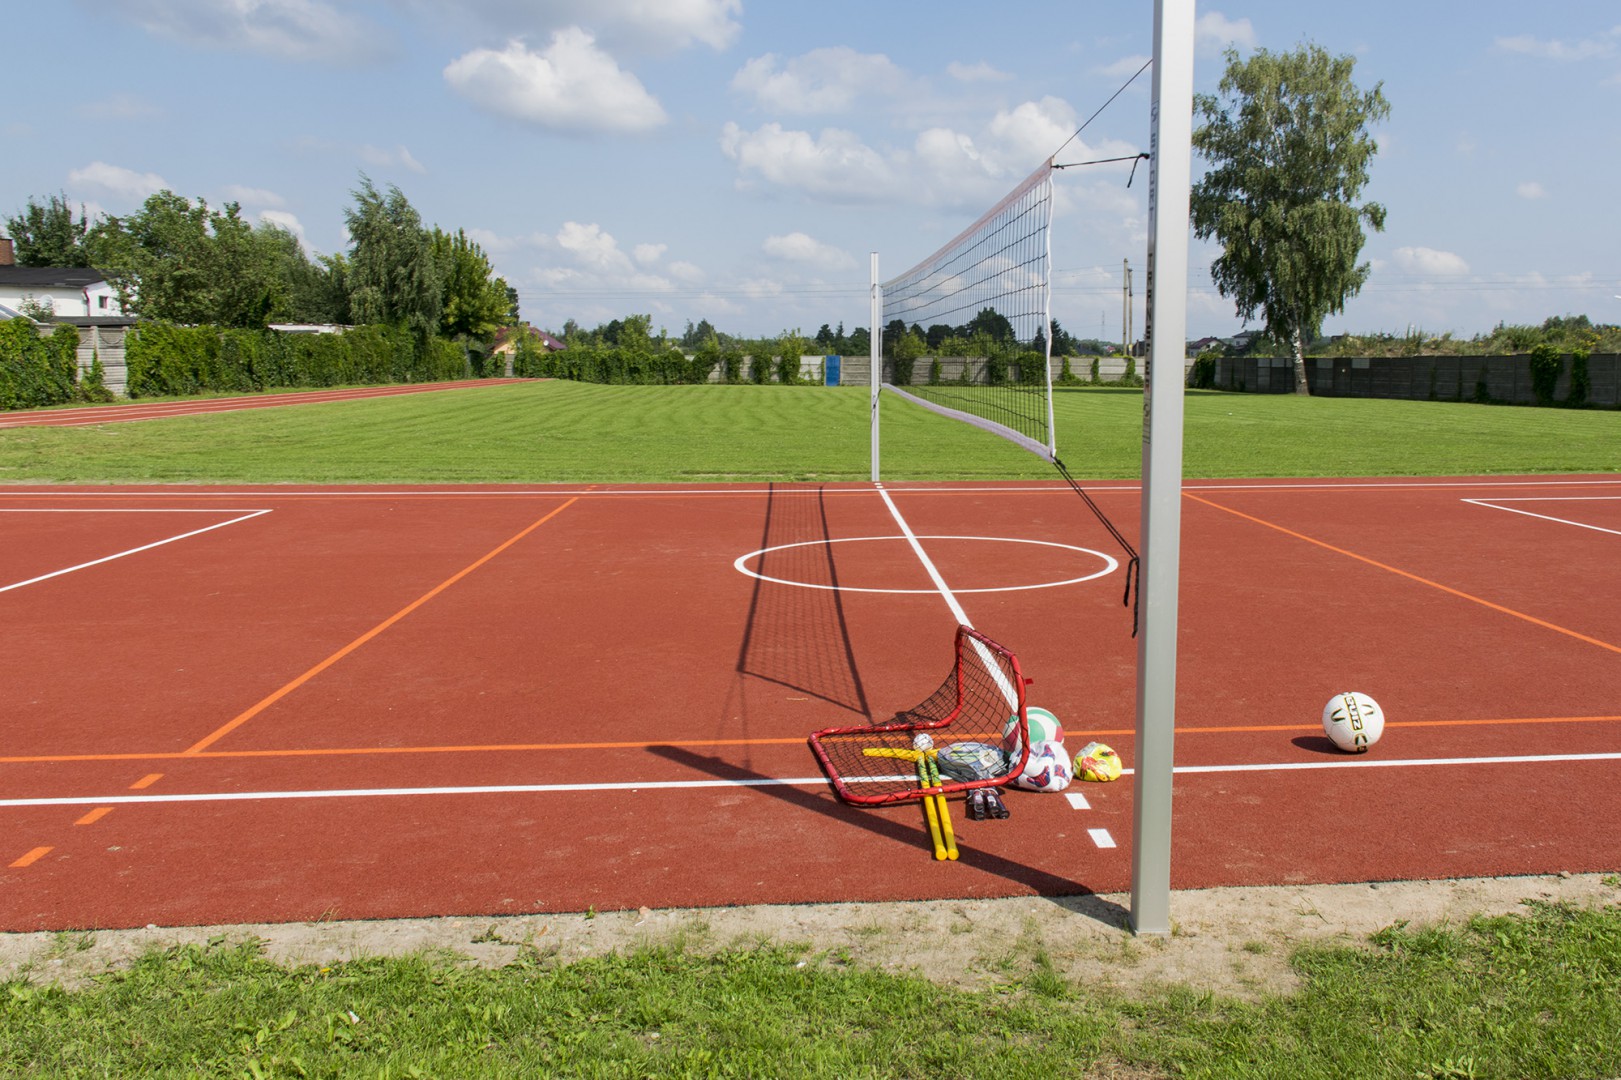 Na zdjęciu widać boisko z czerwoną nawierzchnią, siatkę do siatkówki oraz piłki i małe bramki